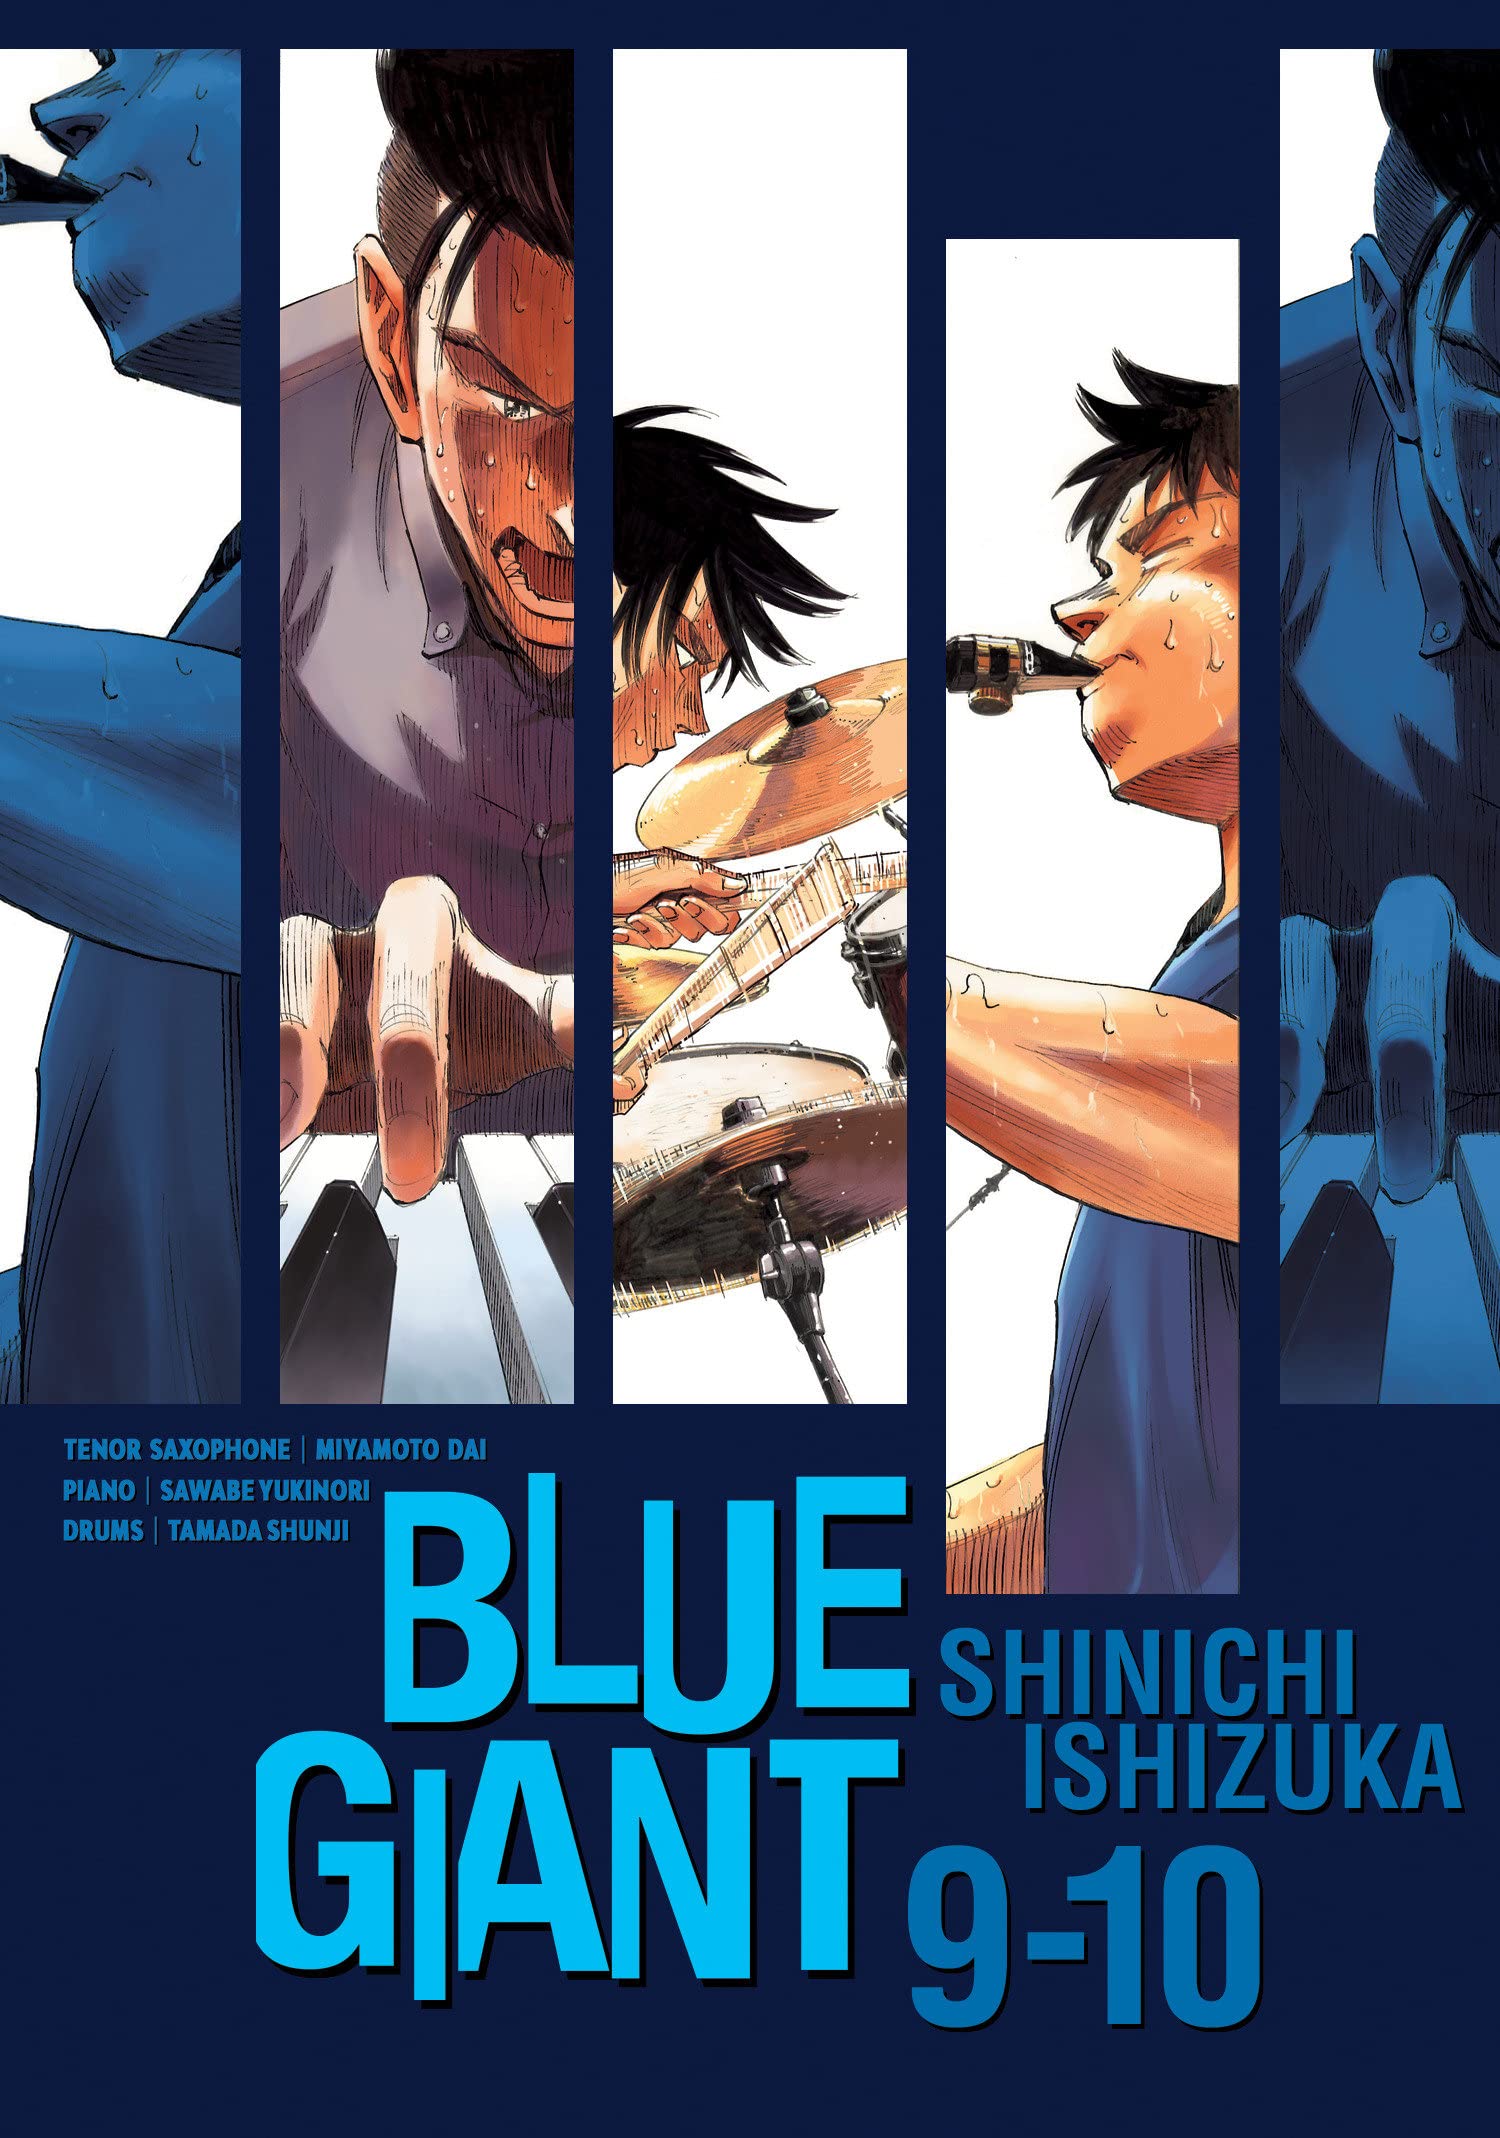 Blue Giant Omnibus Volume 5 (Vol 9-10)